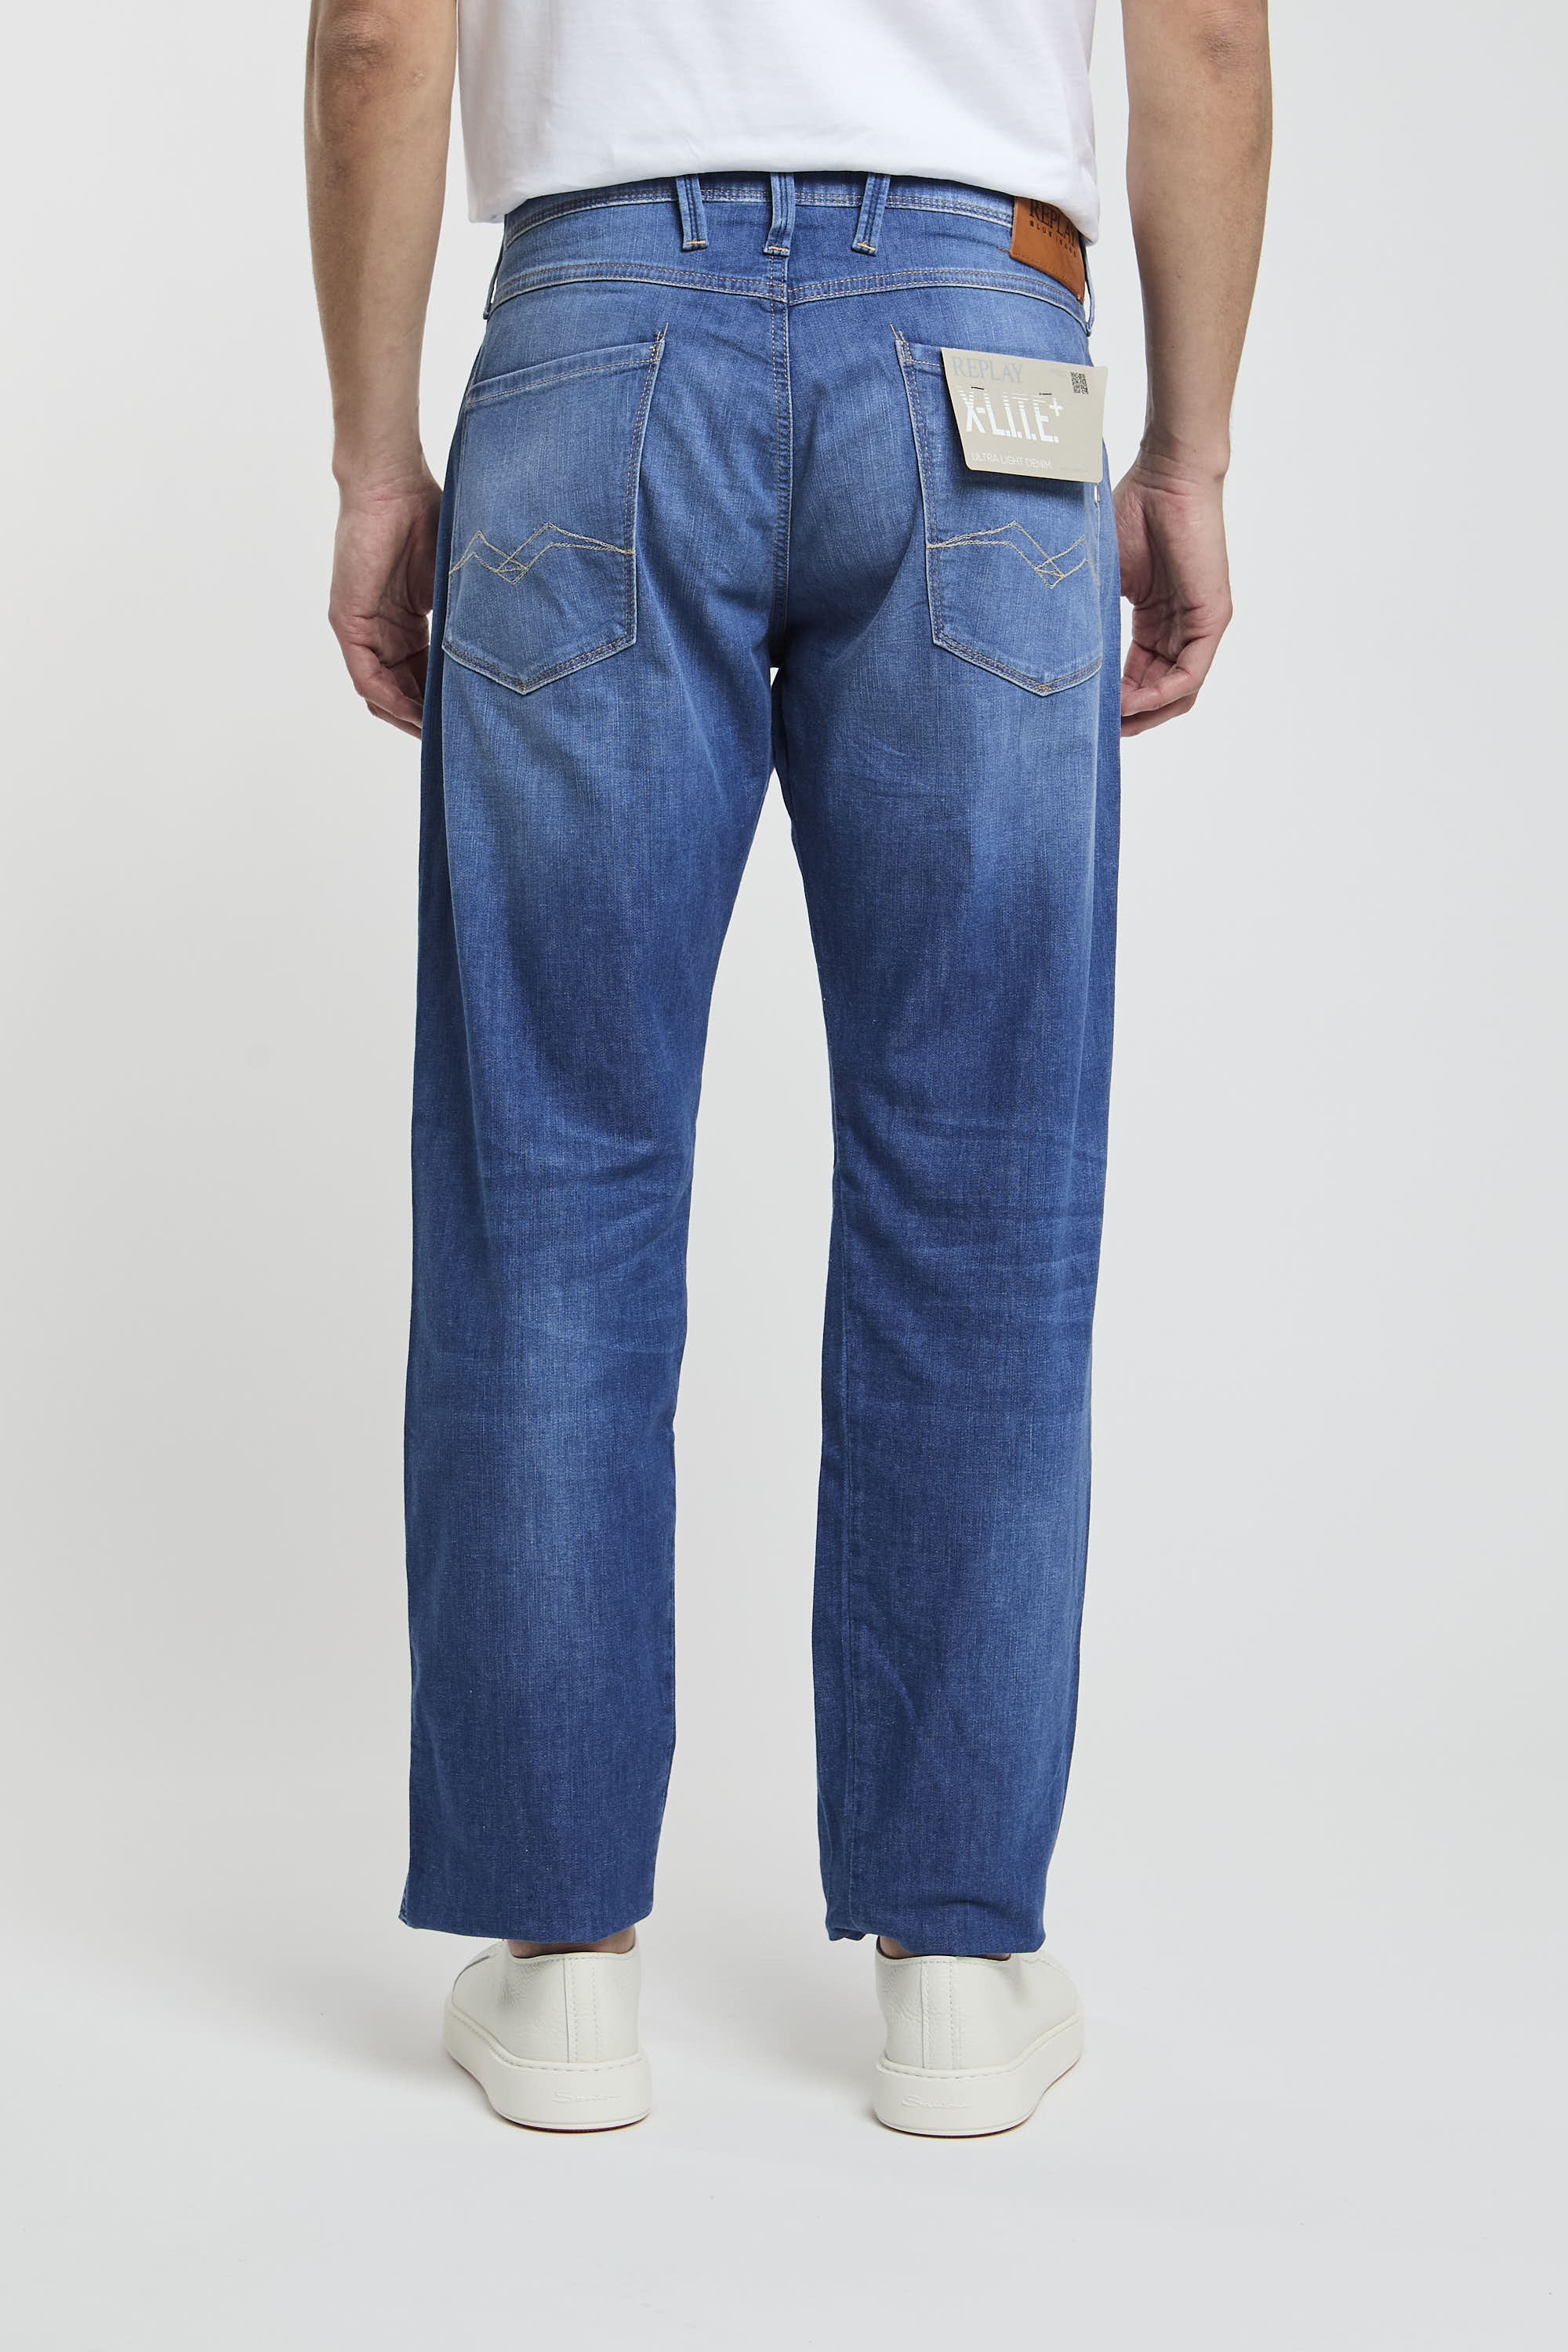 Replay Jeans Slim Fit aus Denim in Baumwolle/Lyocell/Elastomultiester/Elasthan-5